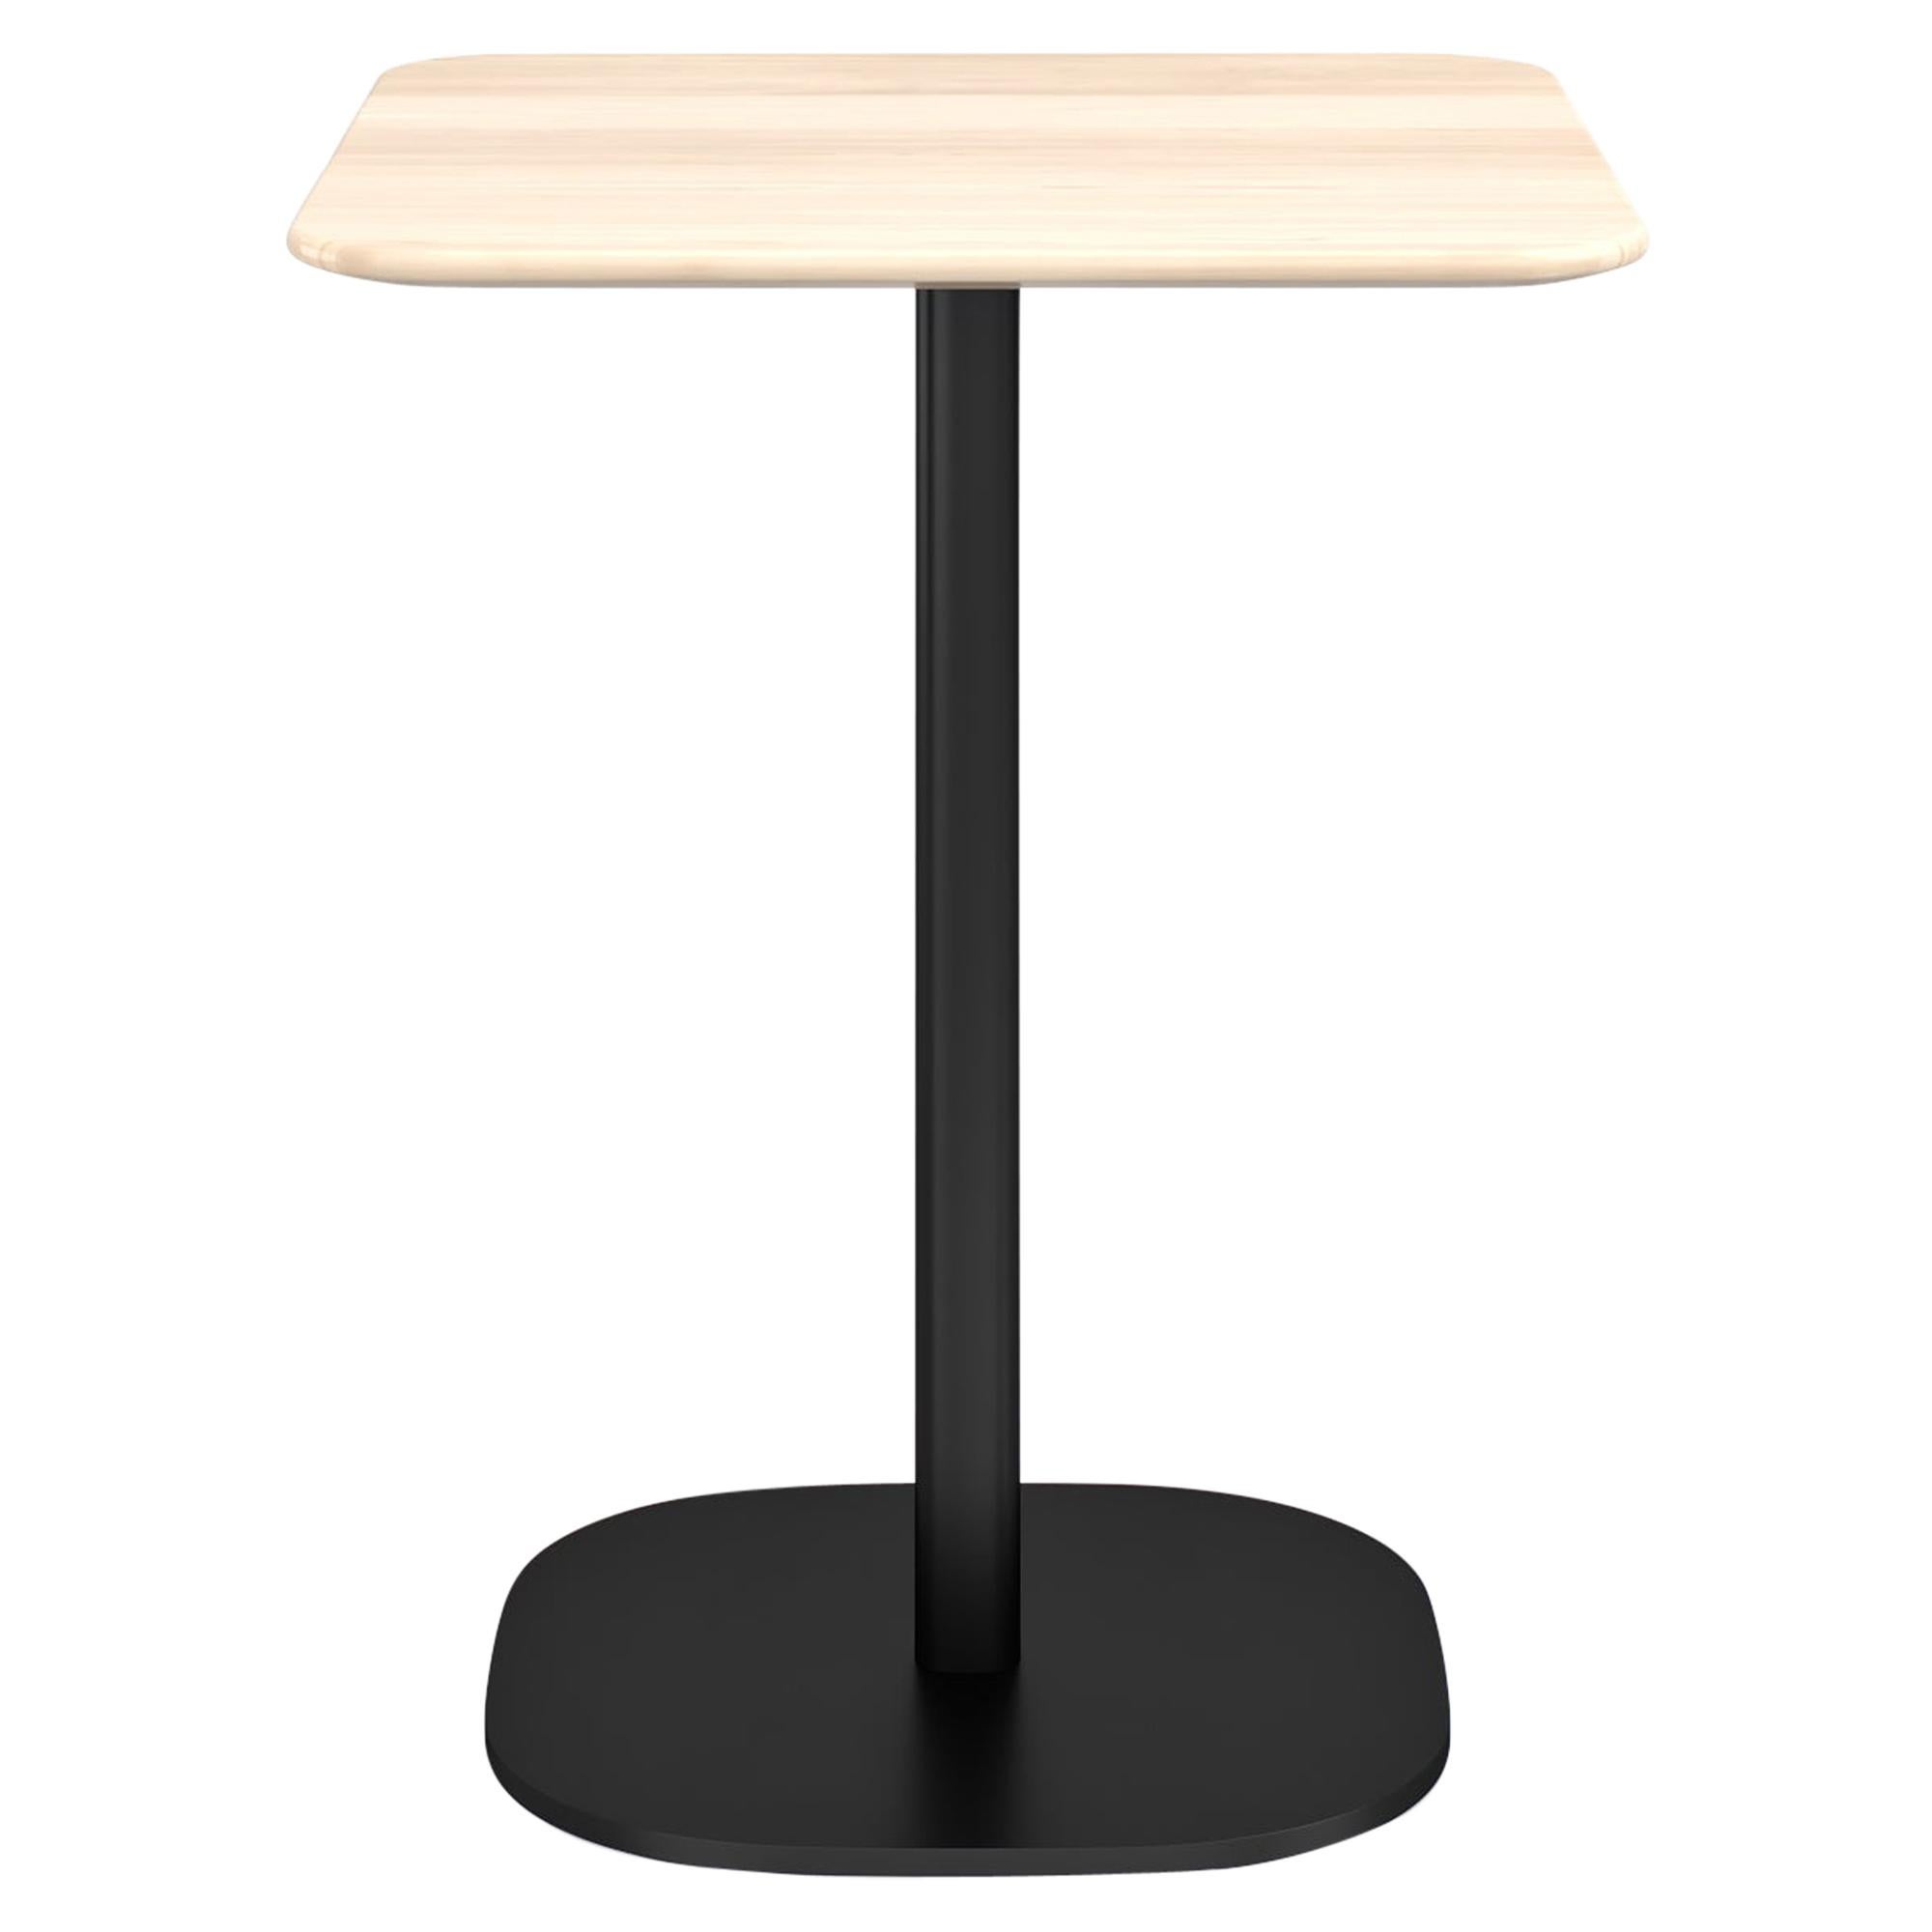 Petite table basse Emeco de 2 pouces avec pieds noirs et plateau en bois par Jasper Morrison